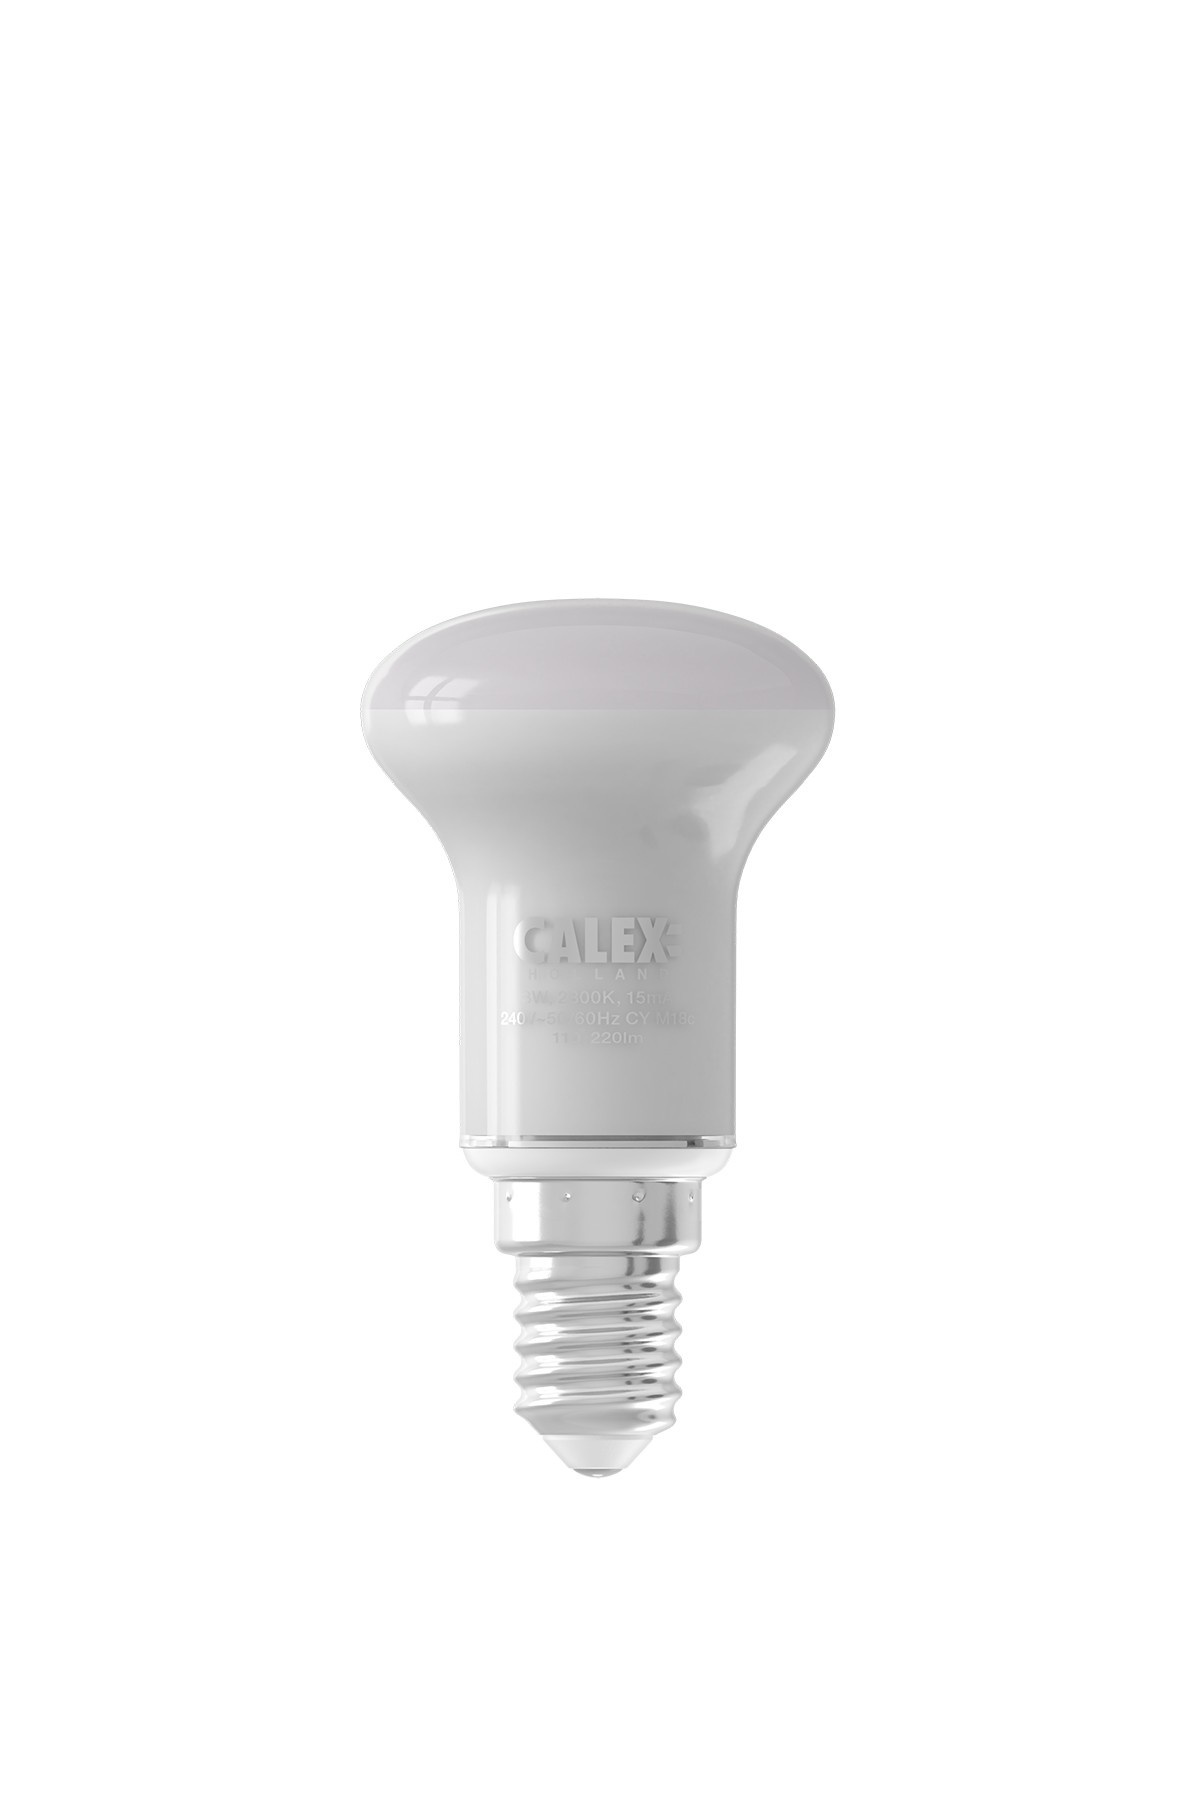 Calex Lampe Reflecteur LED Ø50 - E14 - 430 Lm - Lampesonline